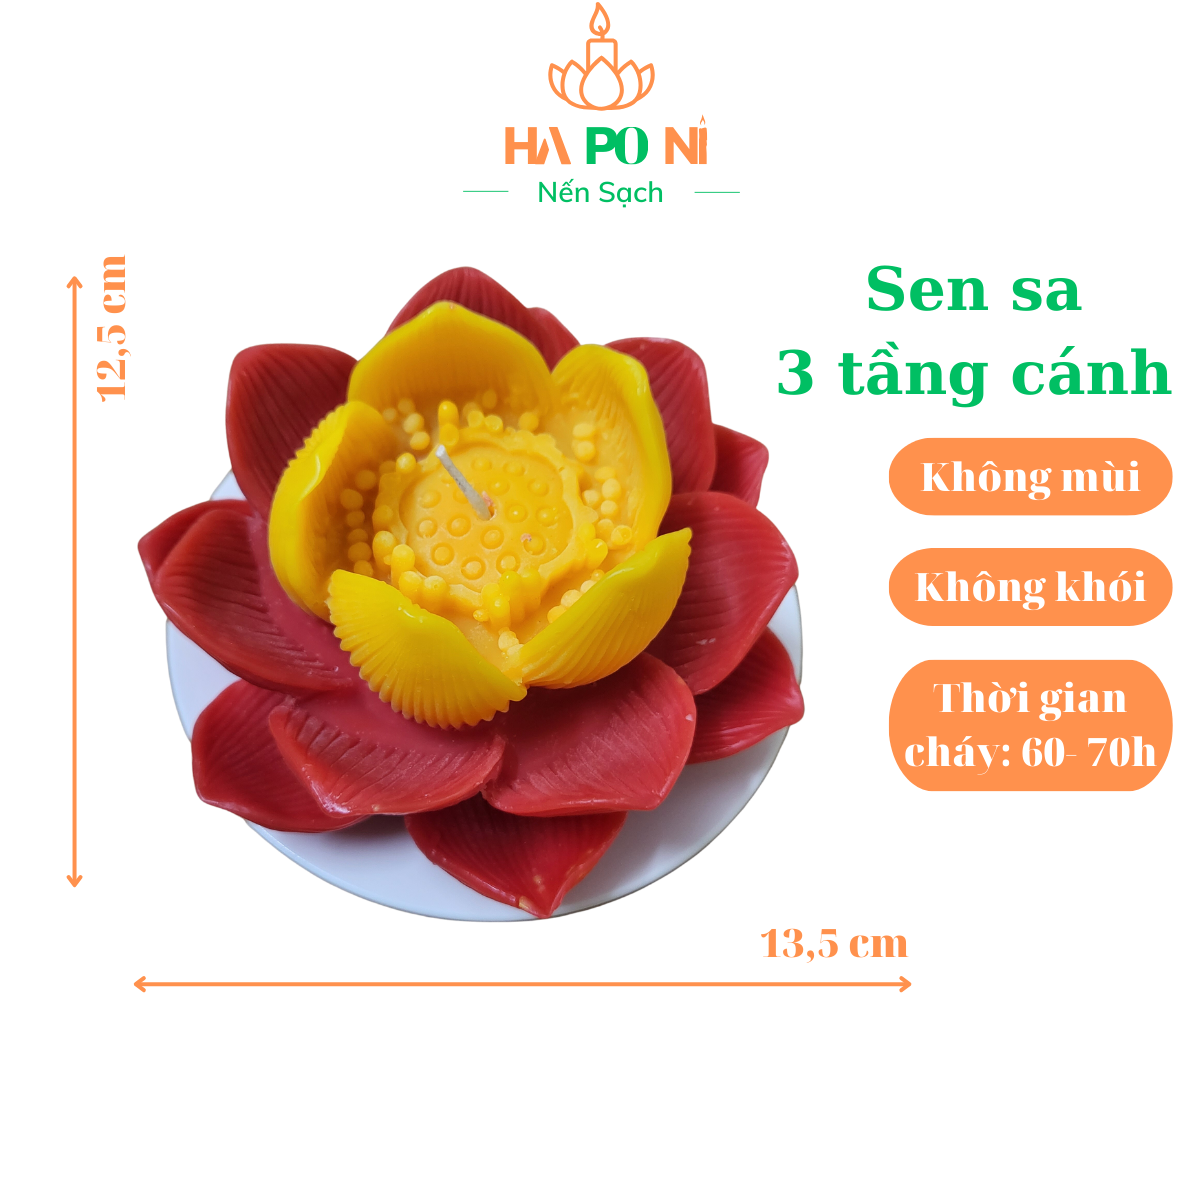 Nến hoa sen sa HAPONI 3 tầng cánh màu đỏ, nến sen cúng Phật không khói, thời gian cháy 60 giờ